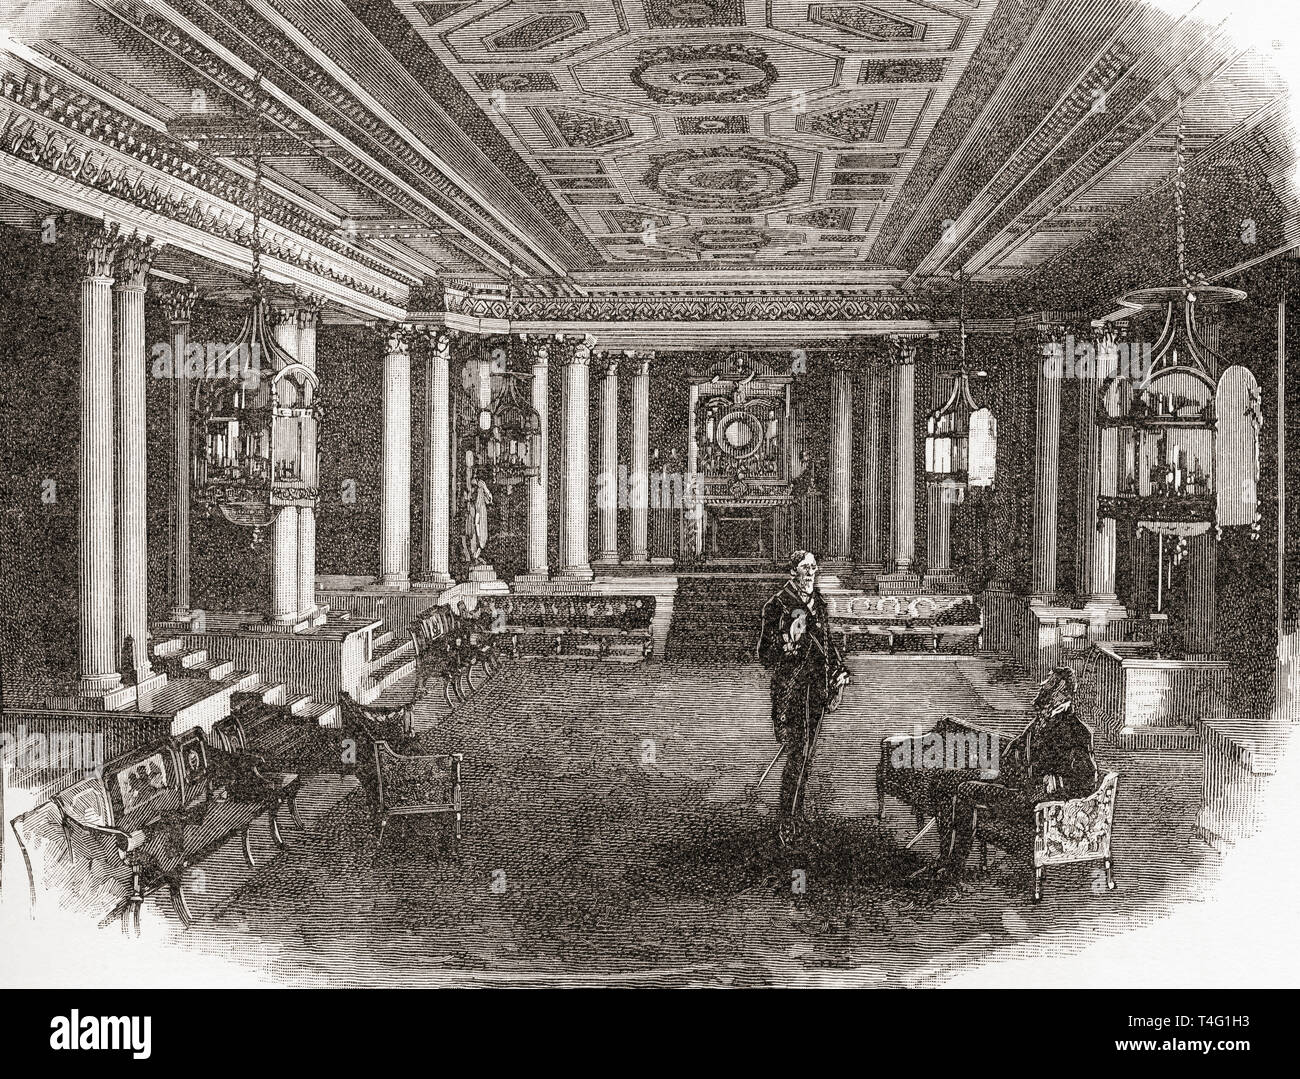 Pilier de la Chambre, le palais de Buckingham, Londres, Angleterre, vu ici au 19e siècle. Londres résidence et siège administratif du monarque du Royaume-Uni. Photos de Londres, publié 1890 Banque D'Images